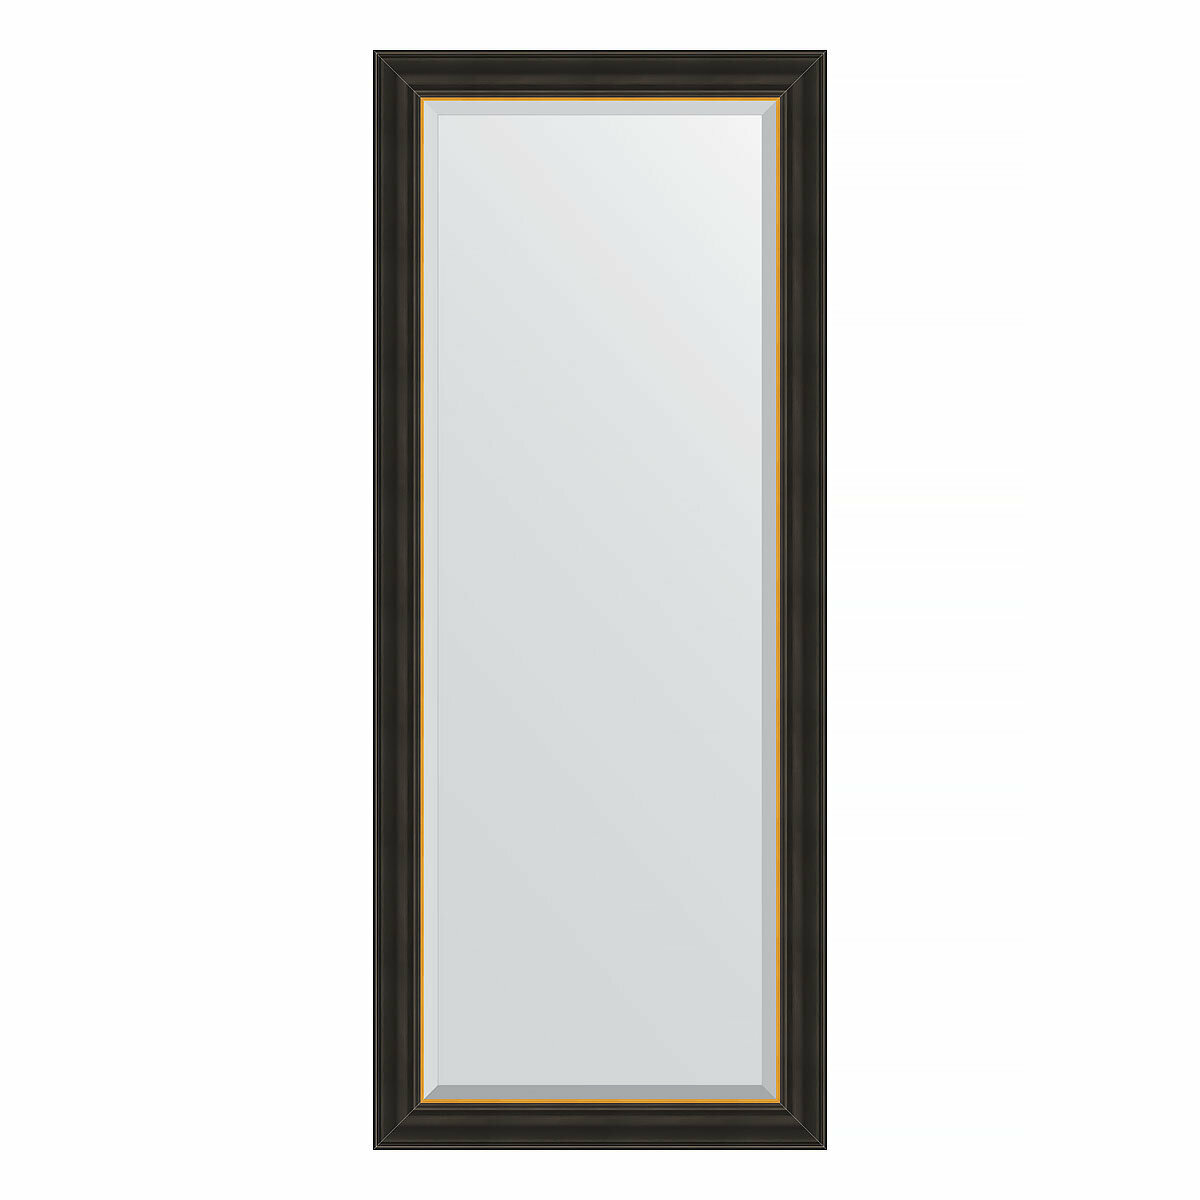 Зеркало настенное с фацетом EVOFORM в багетной раме чёрное дерево с золотом, 64х154 см, для гостиной, прихожей, спальни и ванной комнаты, BY 3930 - фото №1